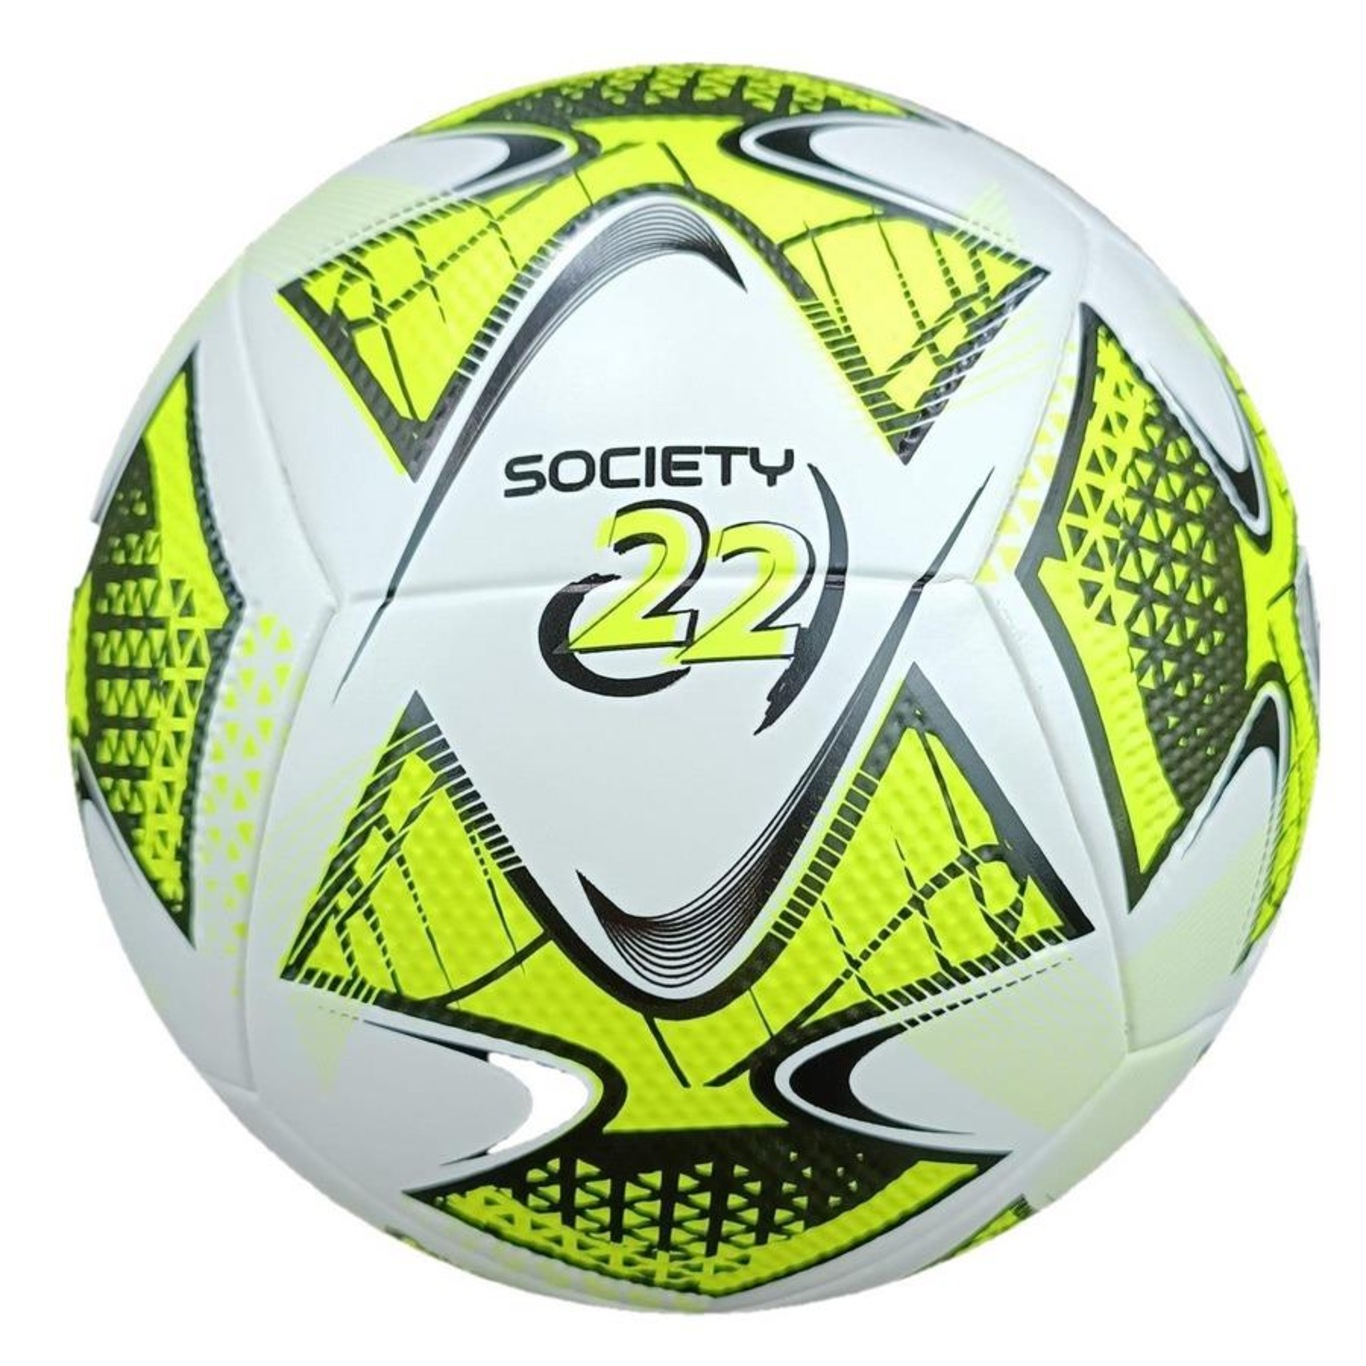 Bola De Futebol Society Slick 2020 Topper Cor Amarelo Neon/Preto